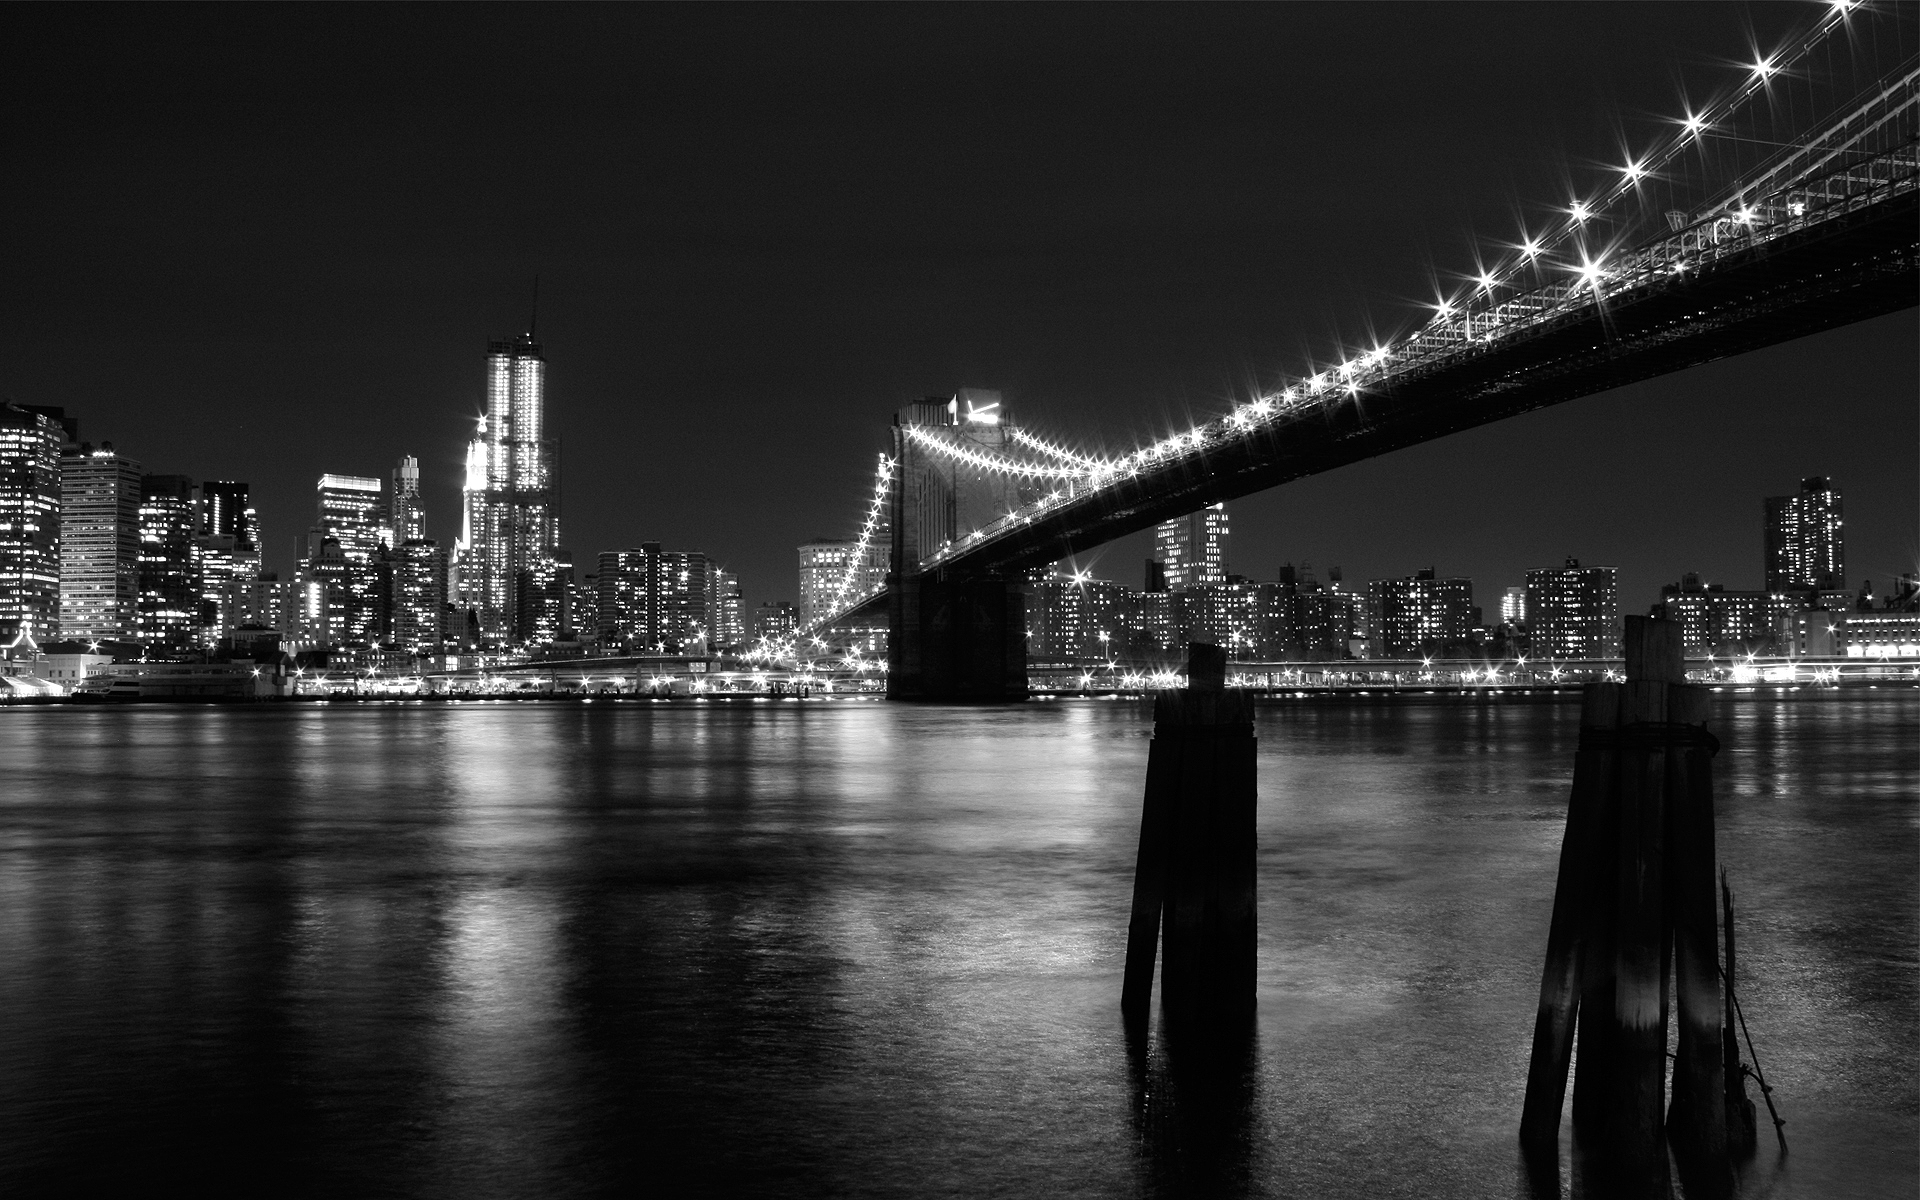 ブルックリン橋の壁紙,都市の景観,夜,市,首都圏,スカイライン